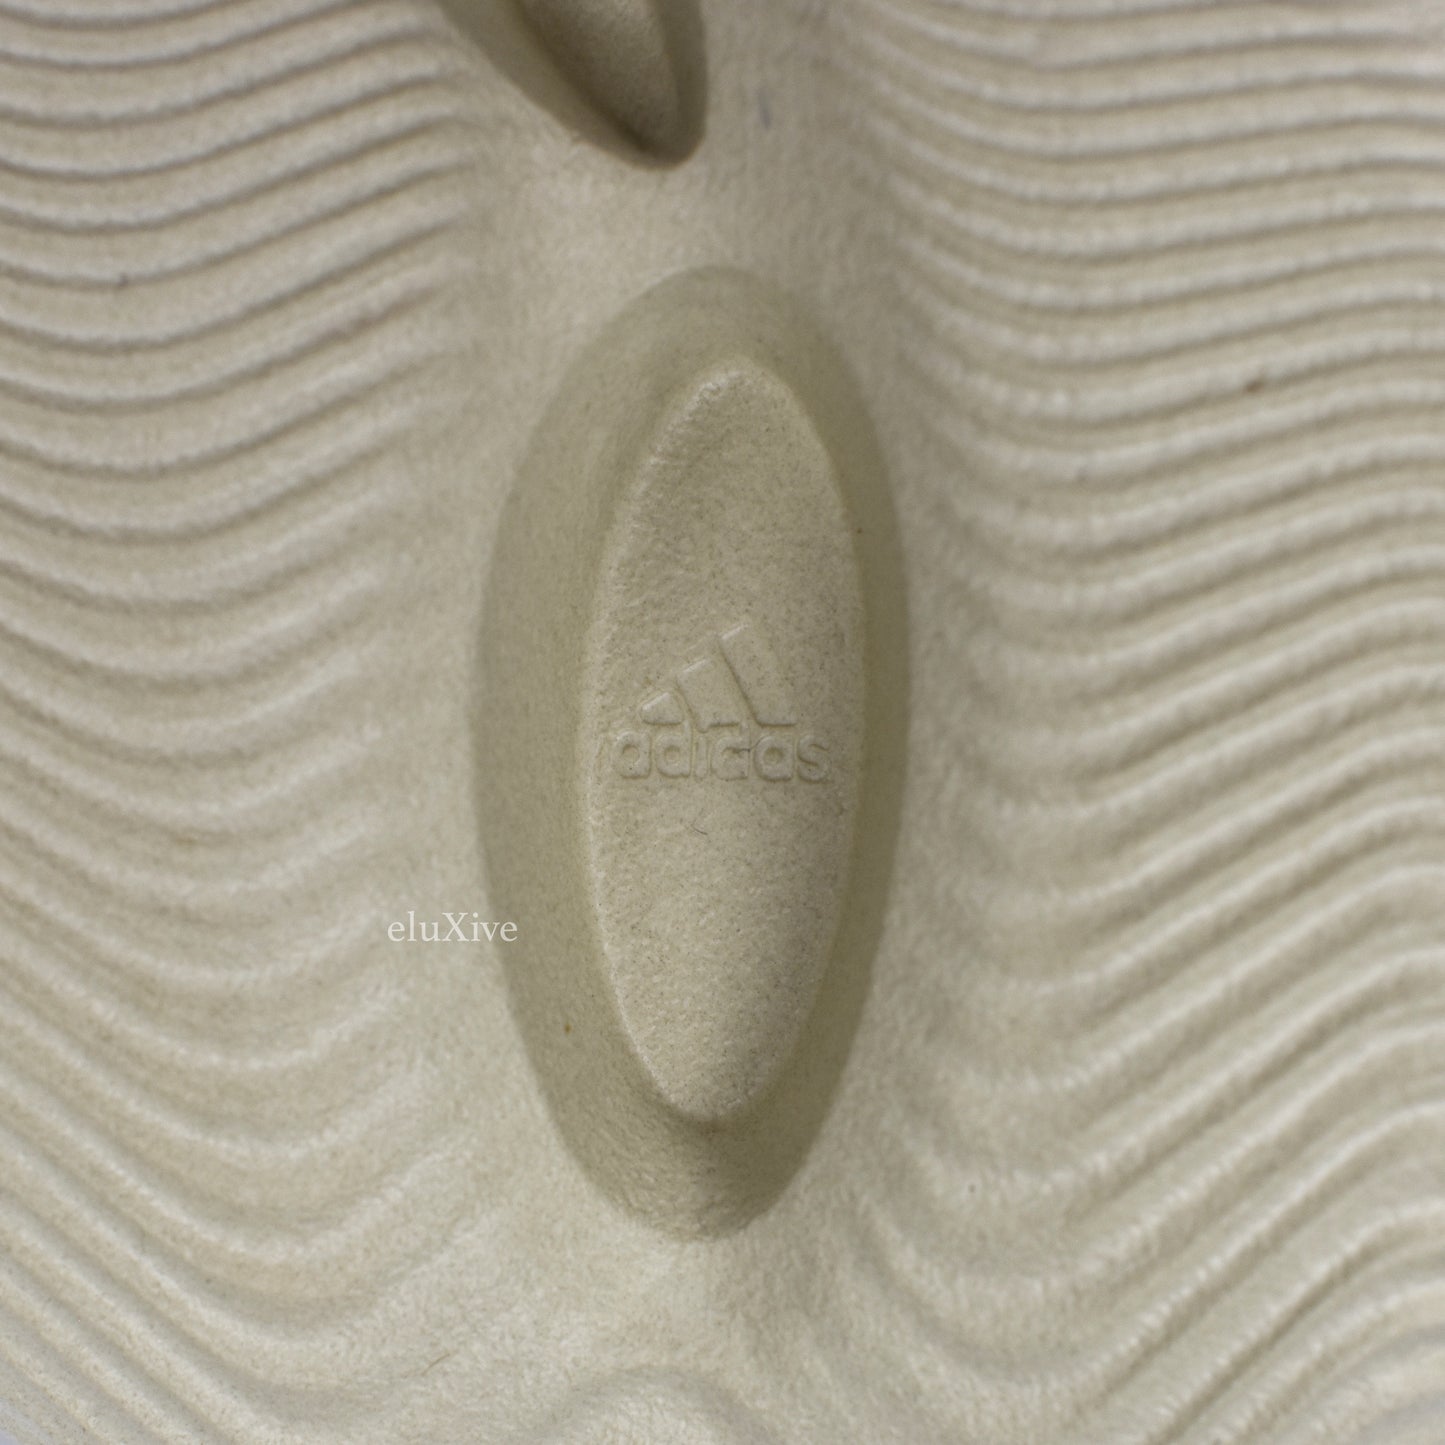 Adidas x Kanye West - Yeezy Foam RNNR (Sand)